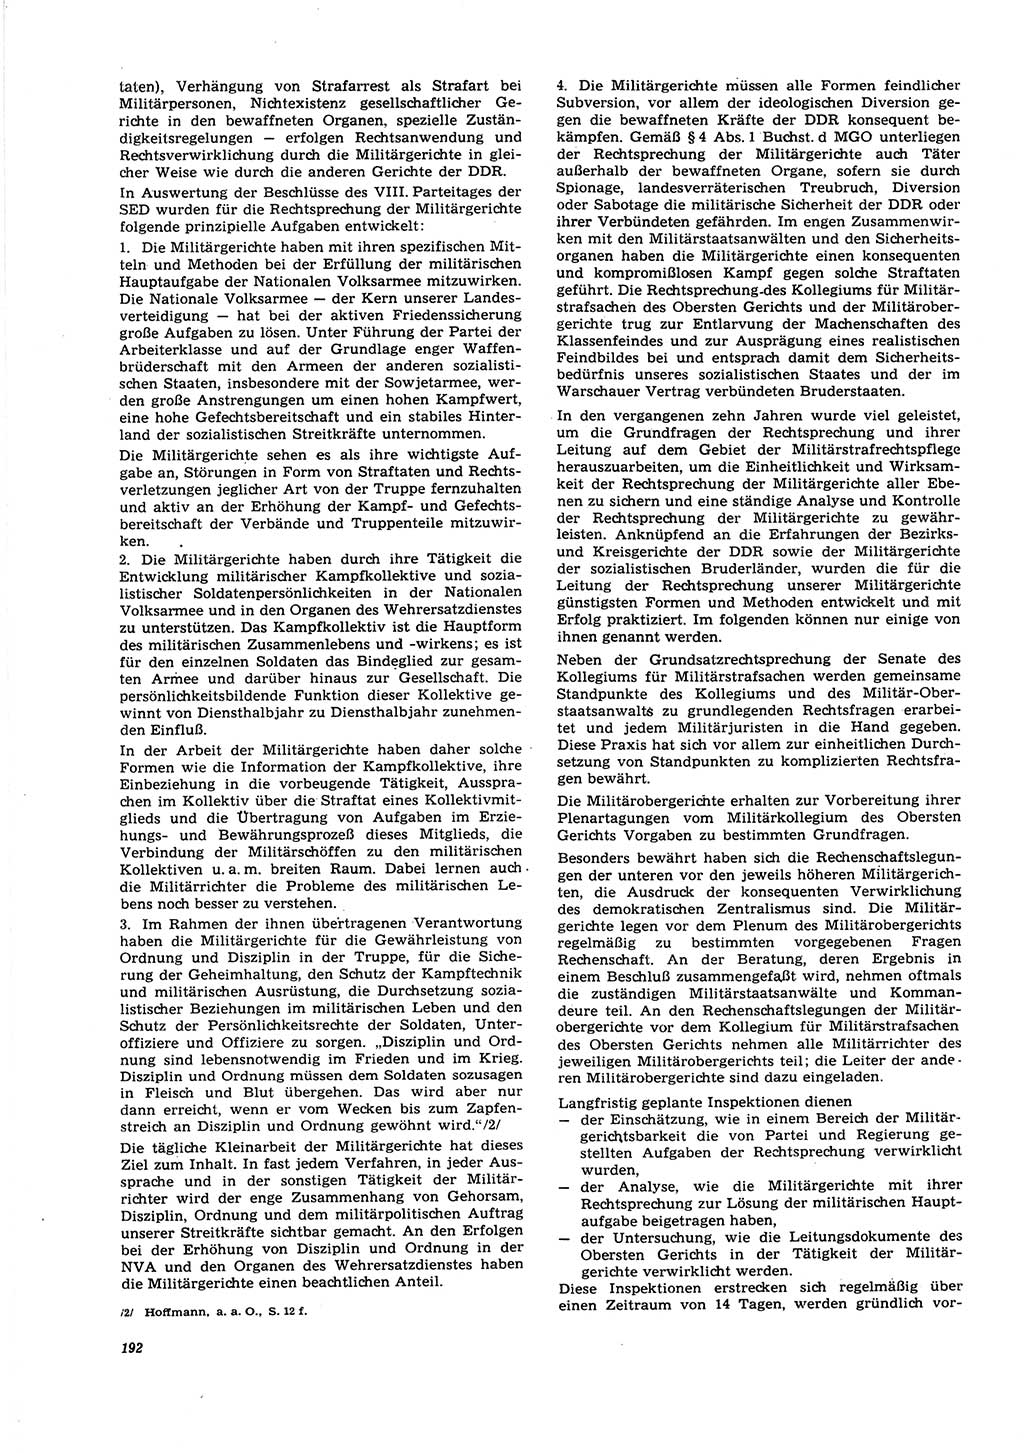 Neue Justiz (NJ), Zeitschrift für Recht und Rechtswissenschaft [Deutsche Demokratische Republik (DDR)], 27. Jahrgang 1973, Seite 192 (NJ DDR 1973, S. 192)